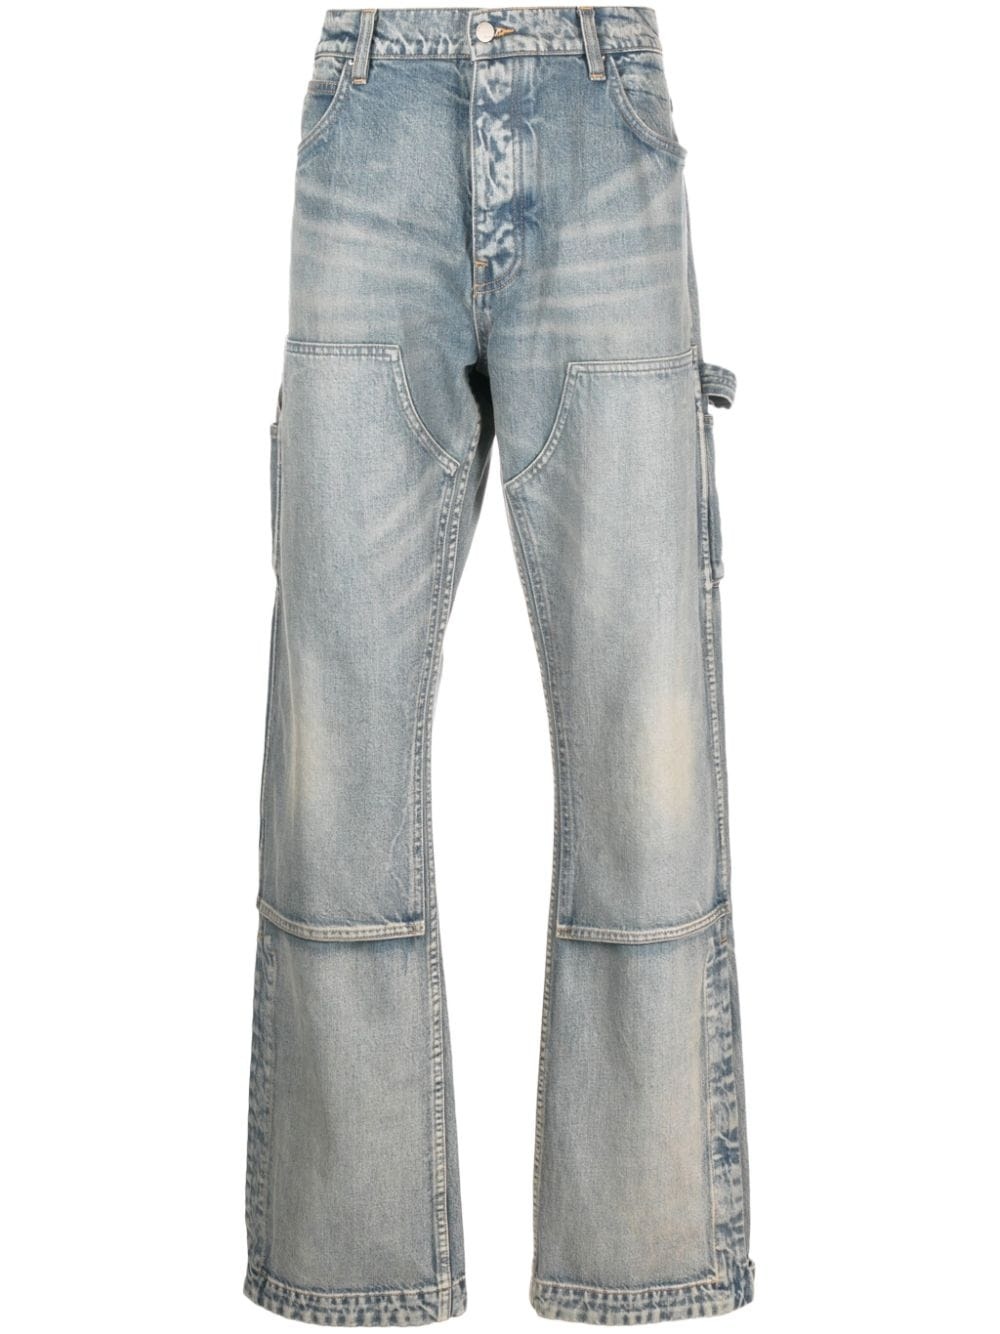 Carpenter stonewashed jeans - 1